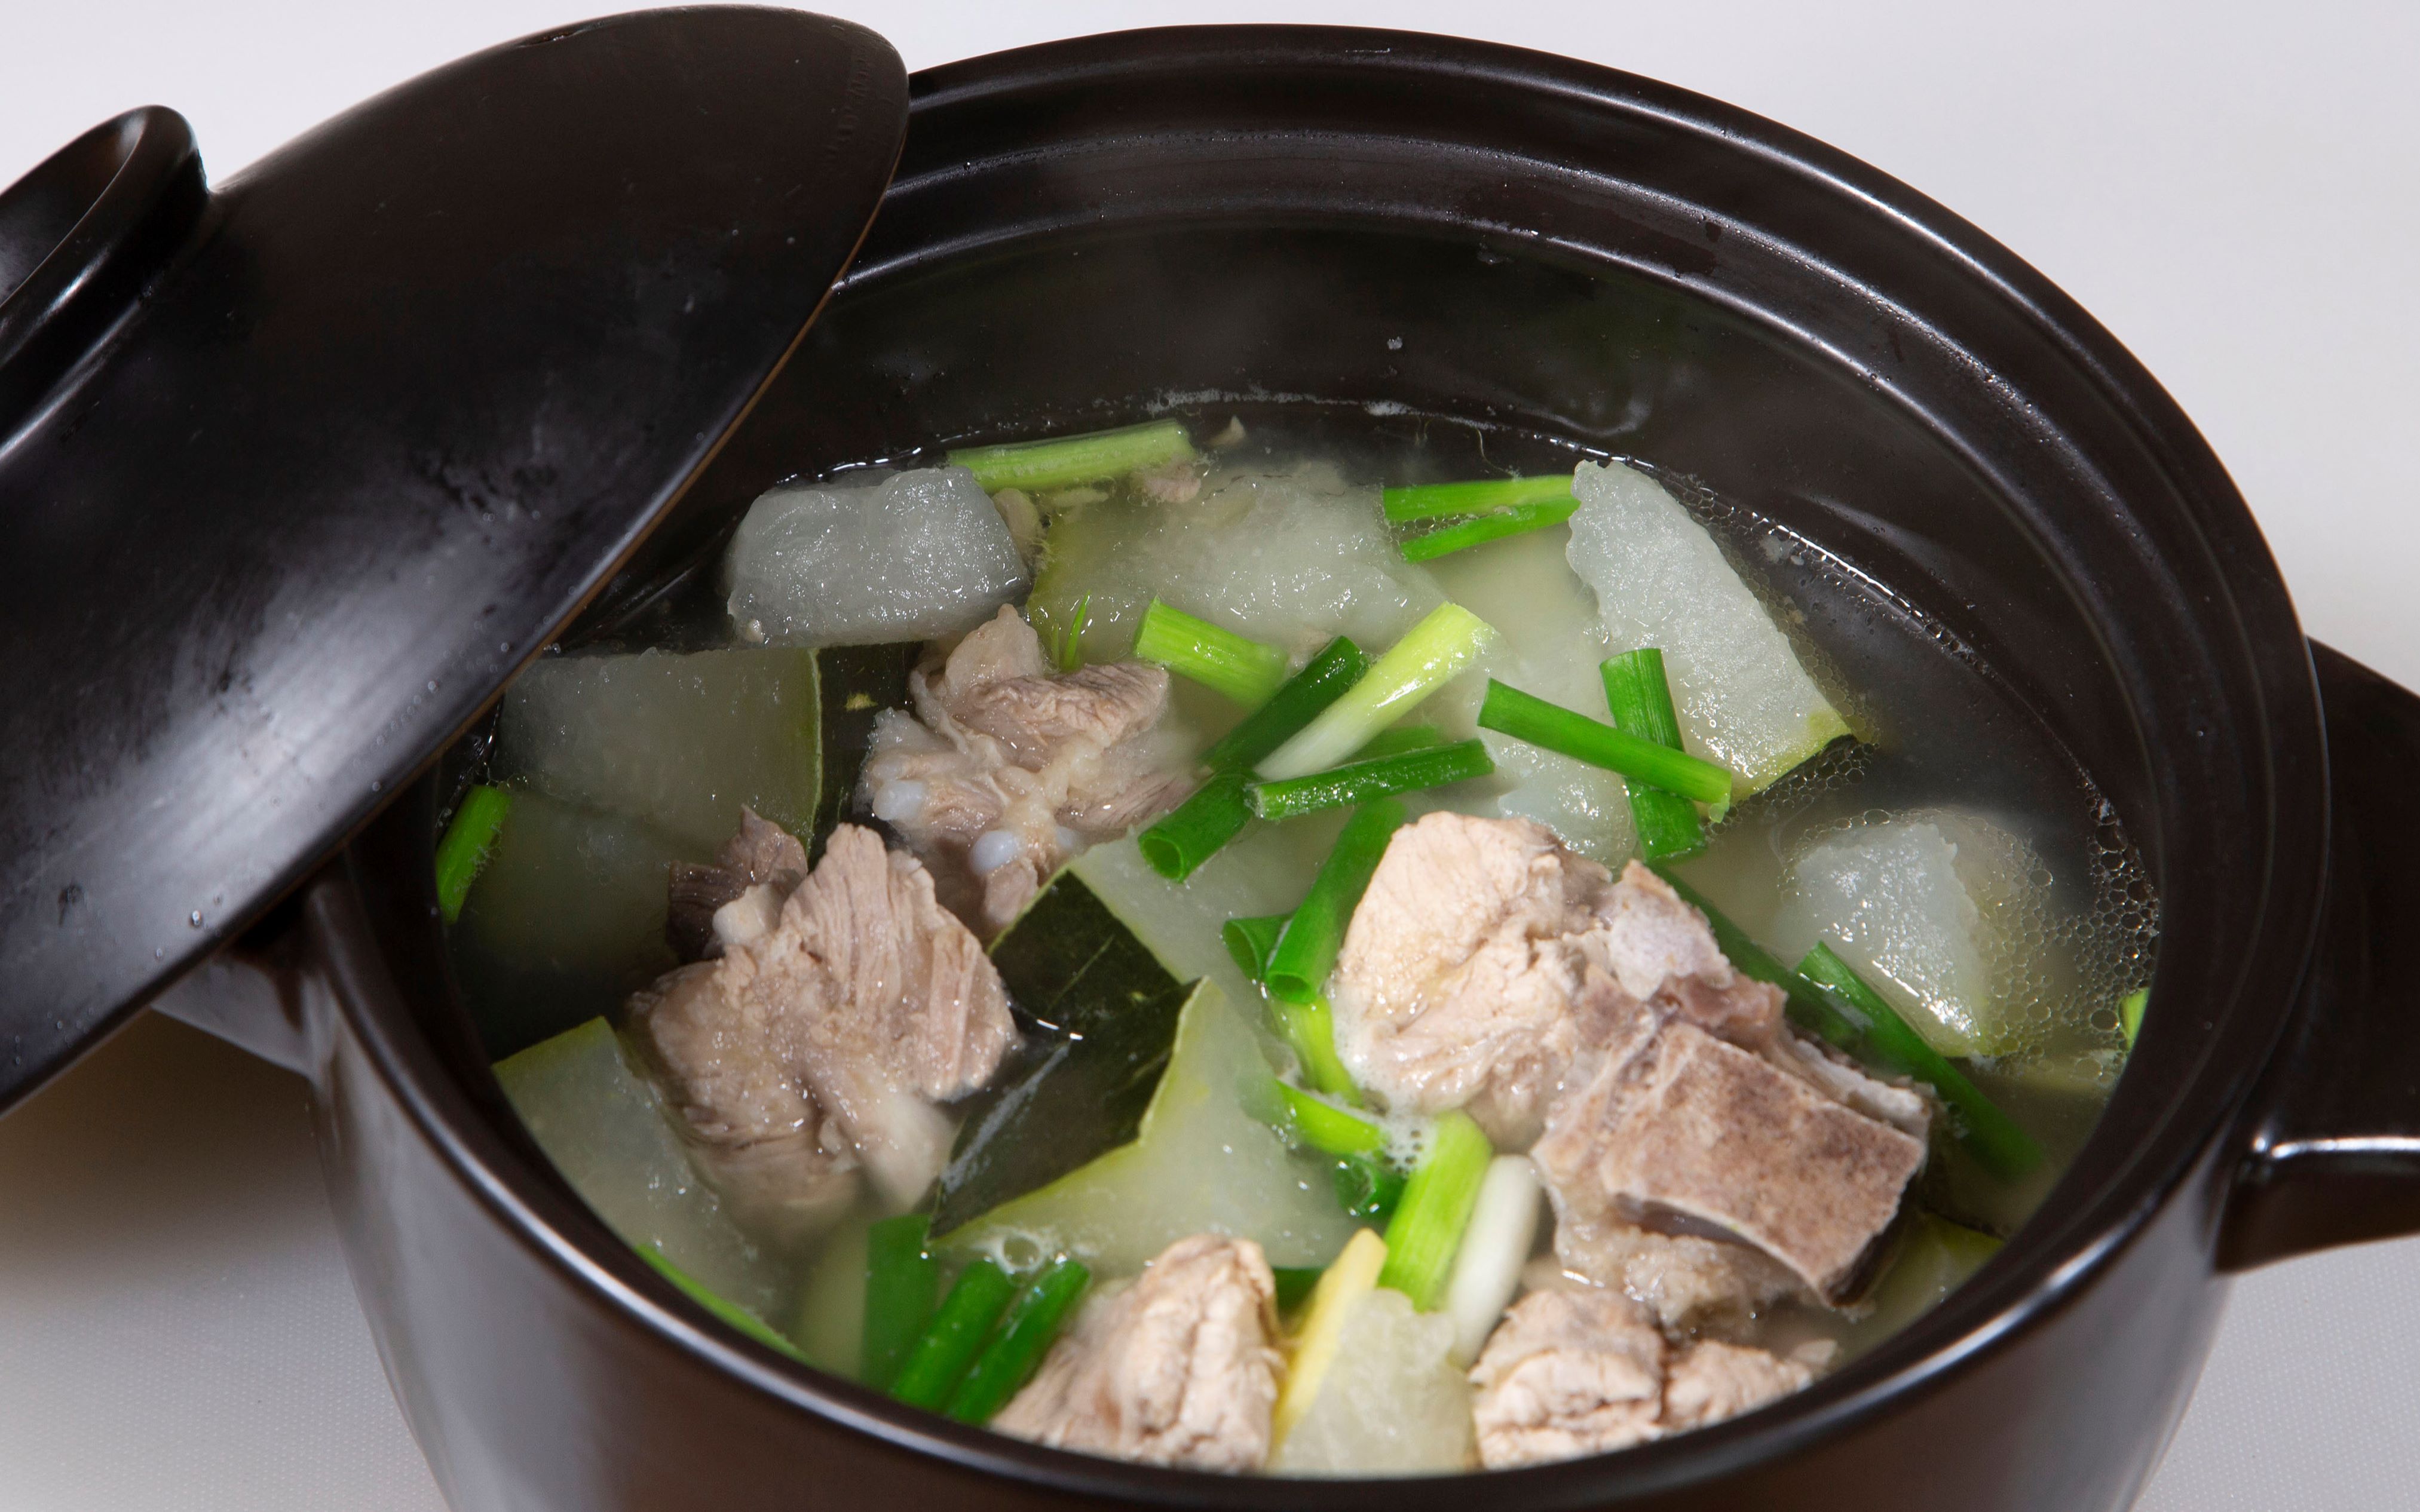 冬瓜排骨汤家常做法简单到两个步骤就能完成汤汁很适合孩子喝